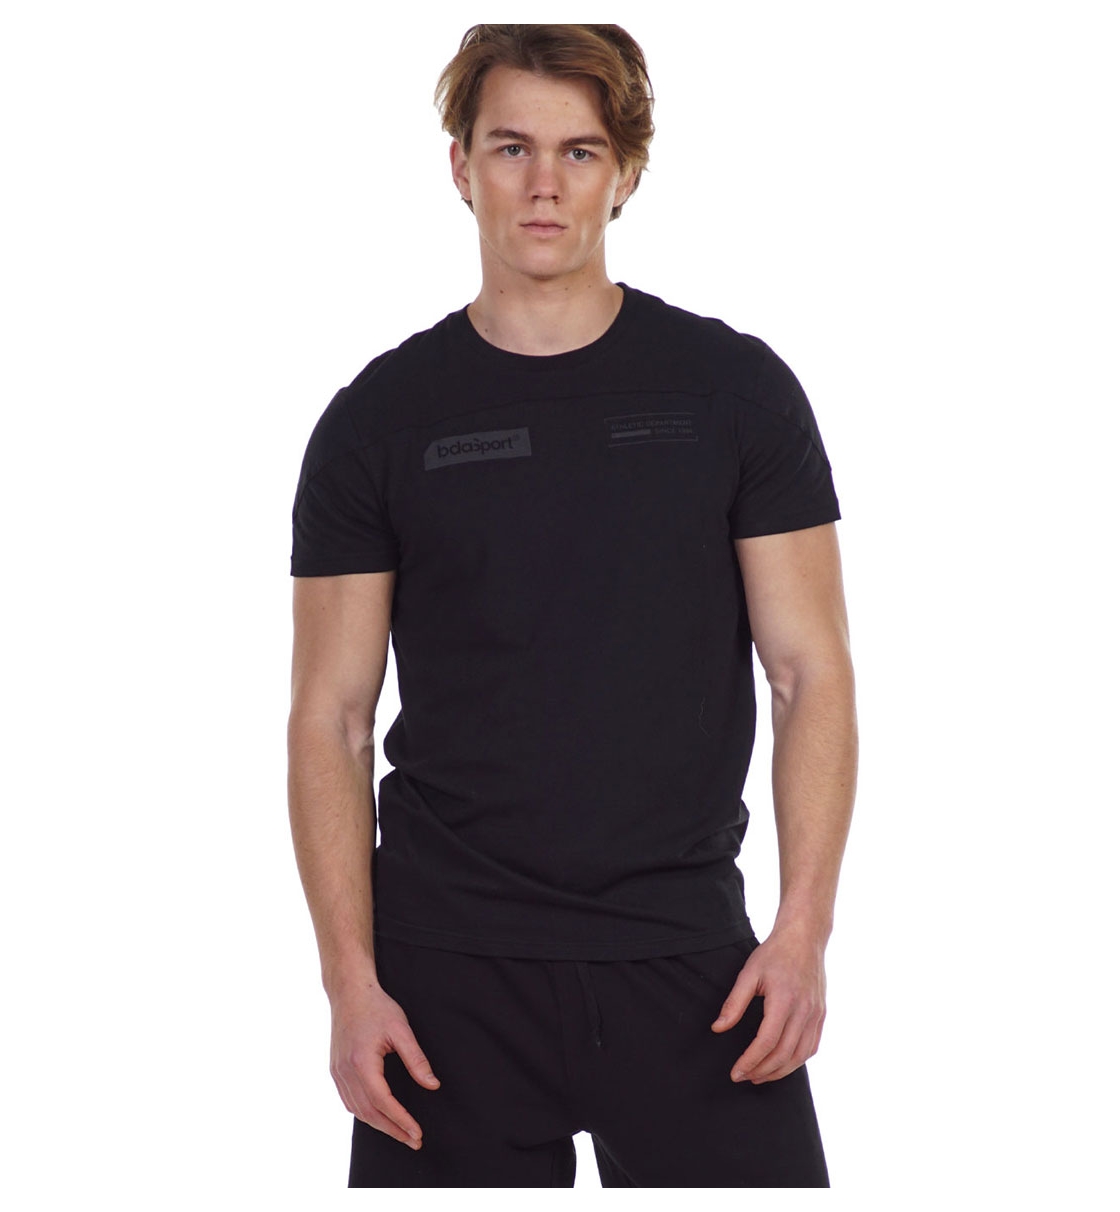 Body Action Ανδρική Κοντομάνικη Μπλούζα Ss21 Men'S Relaxed Fit T-Shirt 053131